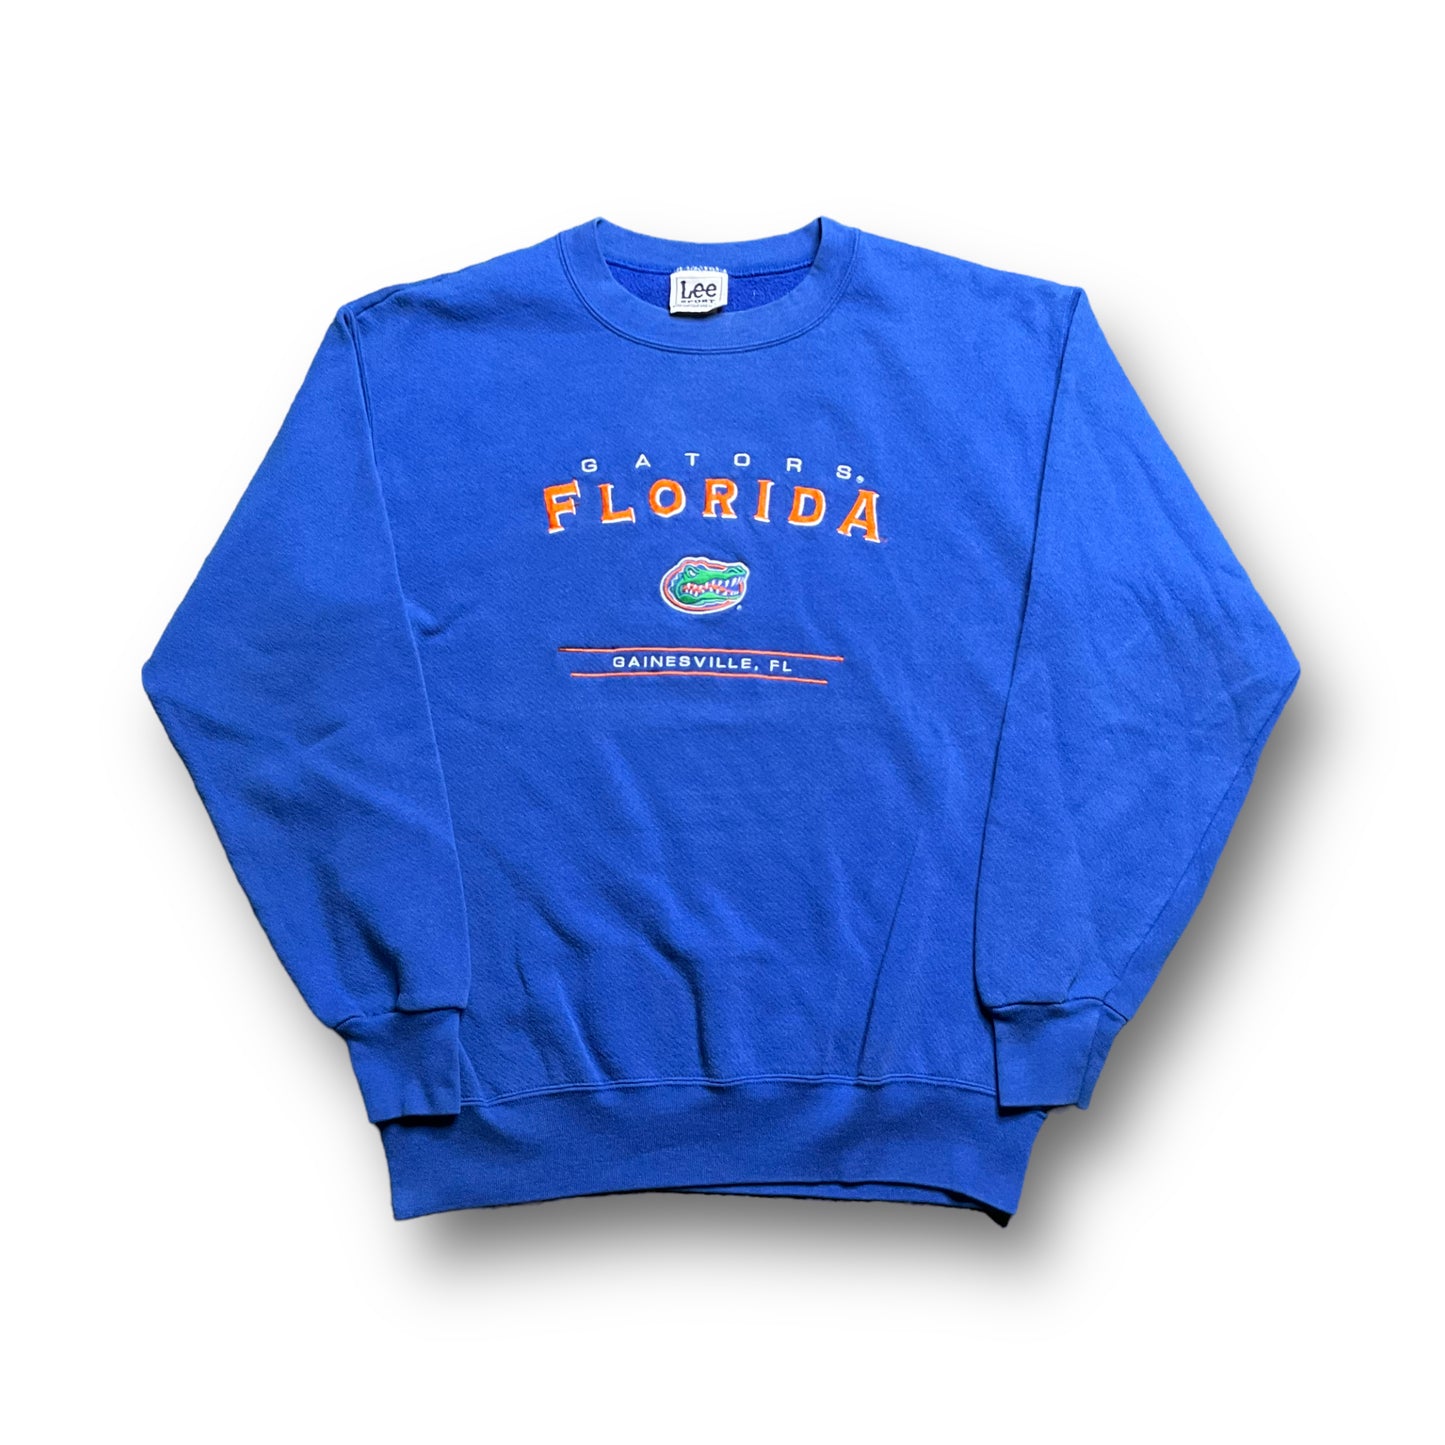 90s Florida Gators Crewneck (L)